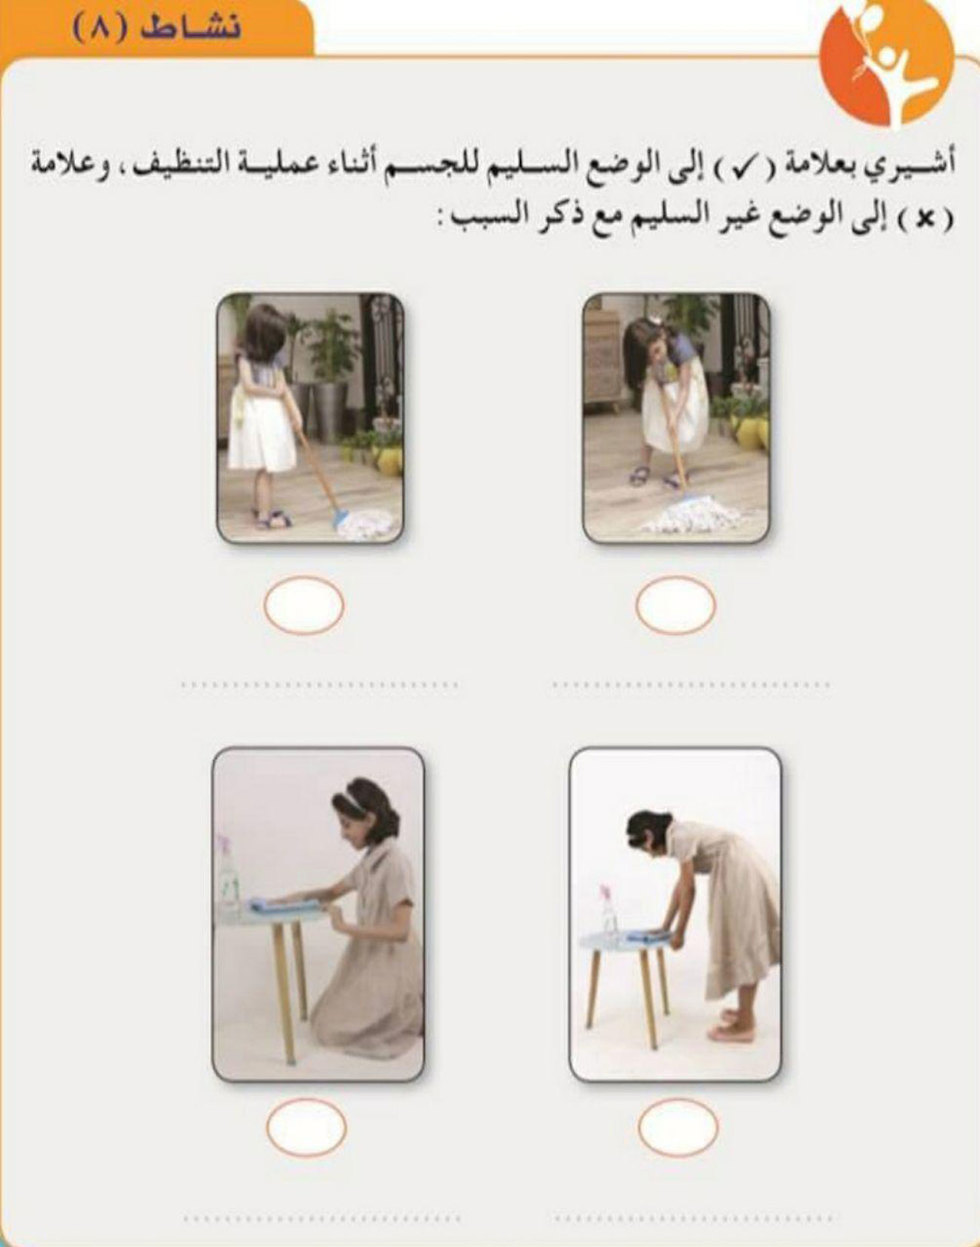 Выбрать лучшую позу для уборки дома: страница саудовского учебника